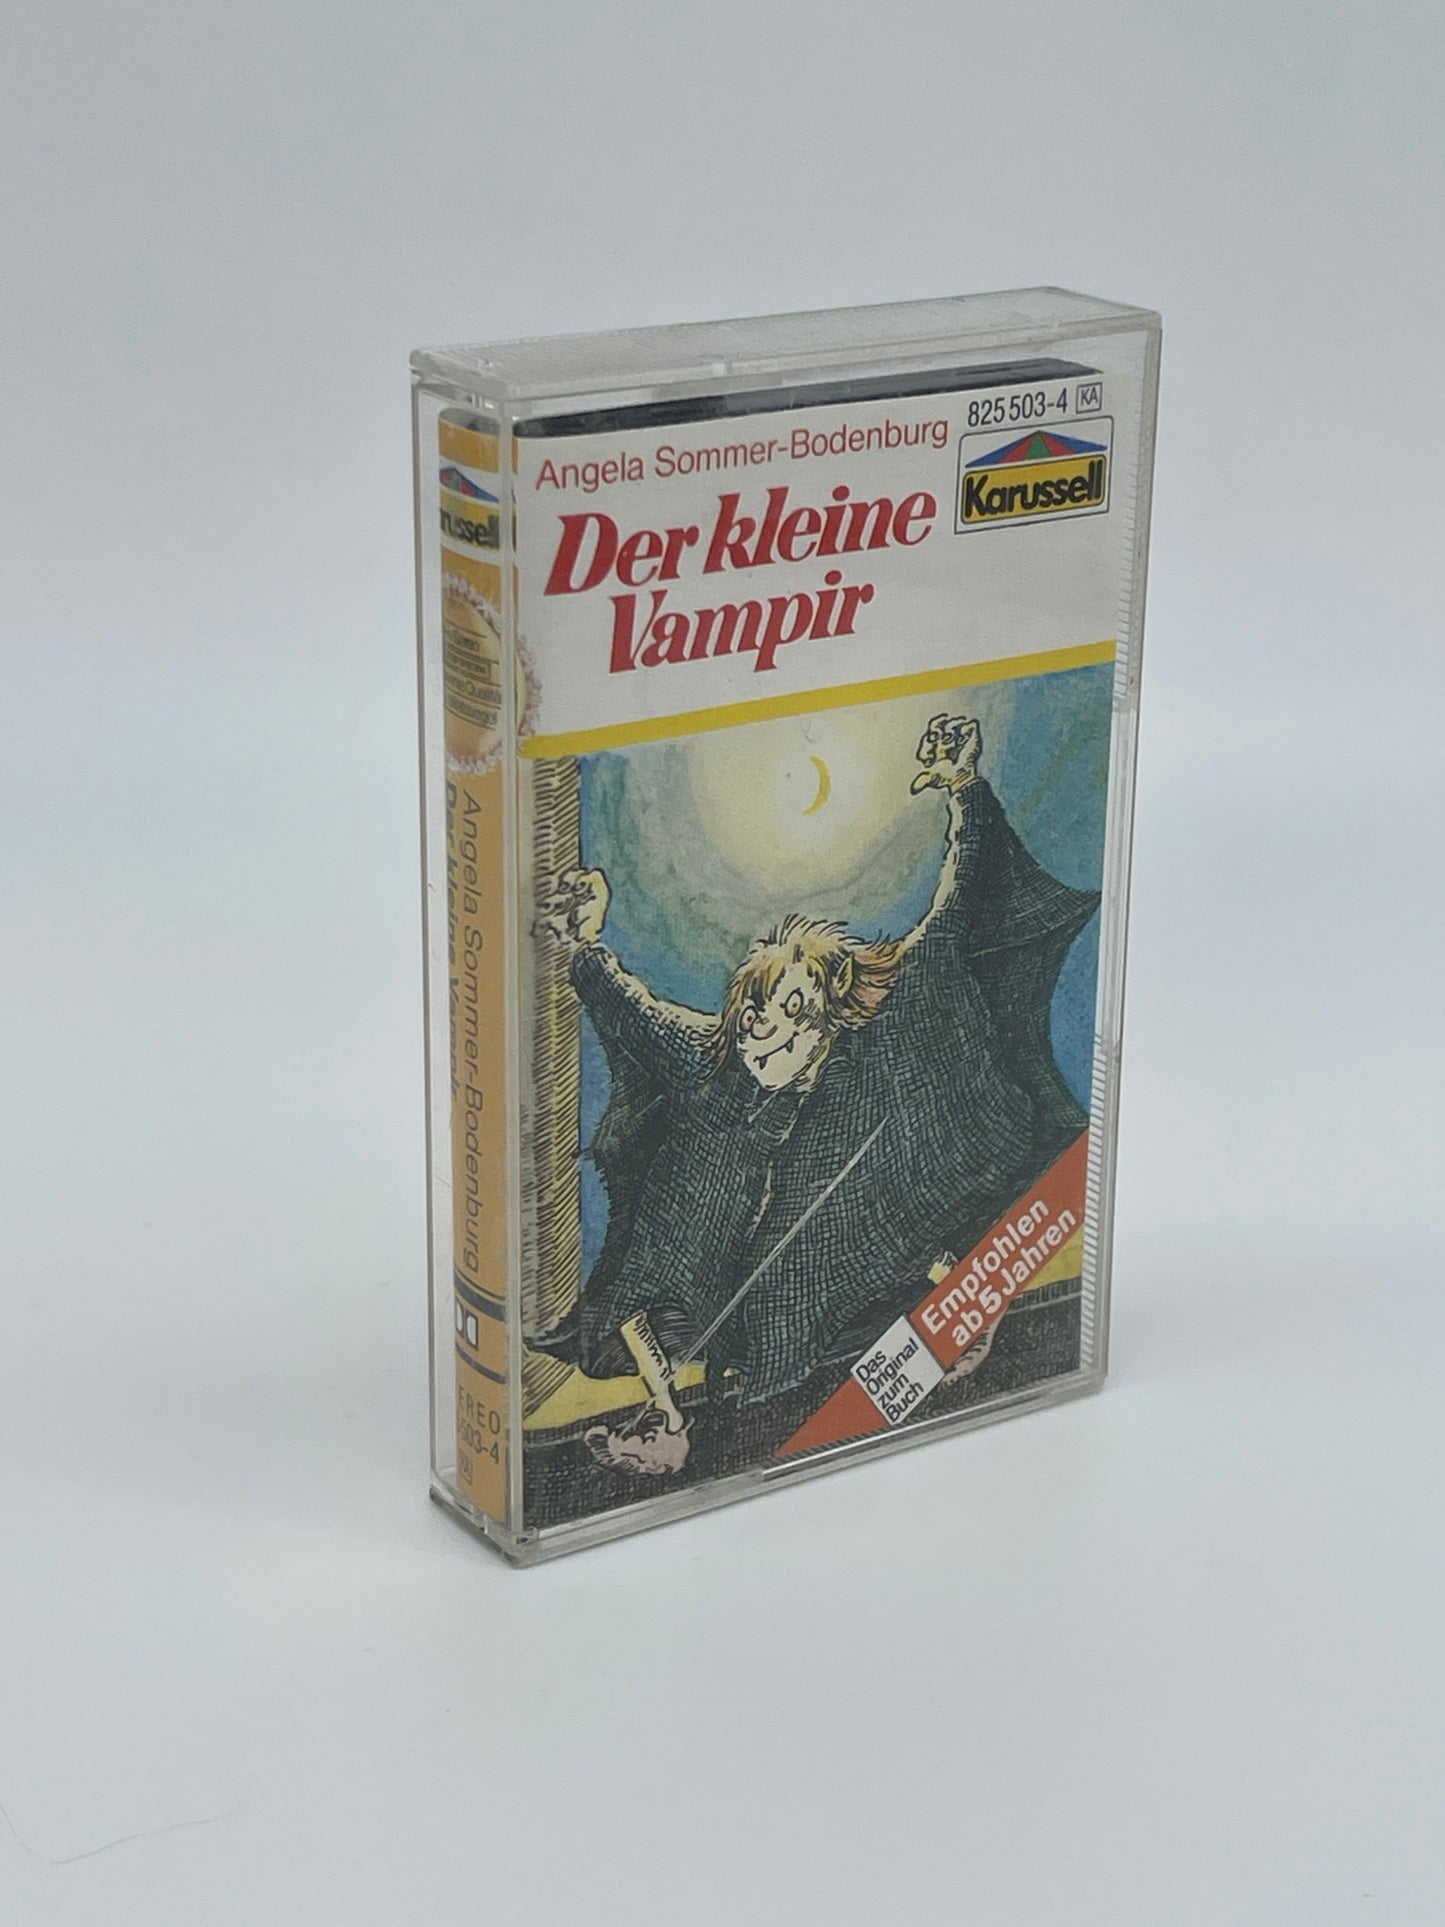 Hörspiel "Der kleine Vampir" Hörspielkassette Angela Sommer-Bodenburg (1983)